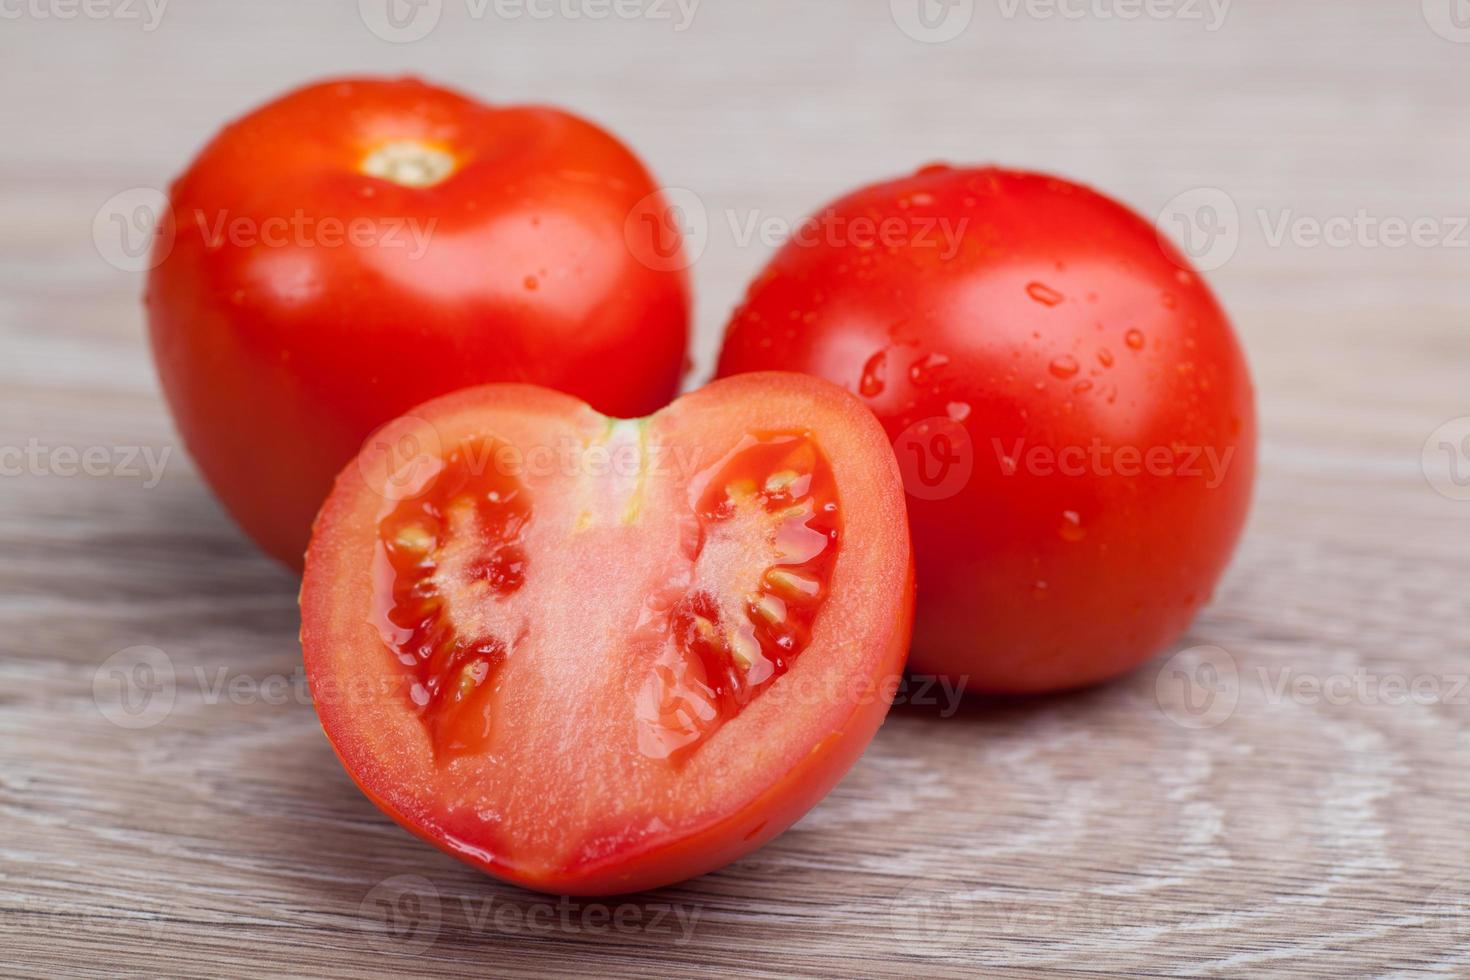 gros plan de tomates fraîches dans des gouttes d'eau sur une planche de bois photo